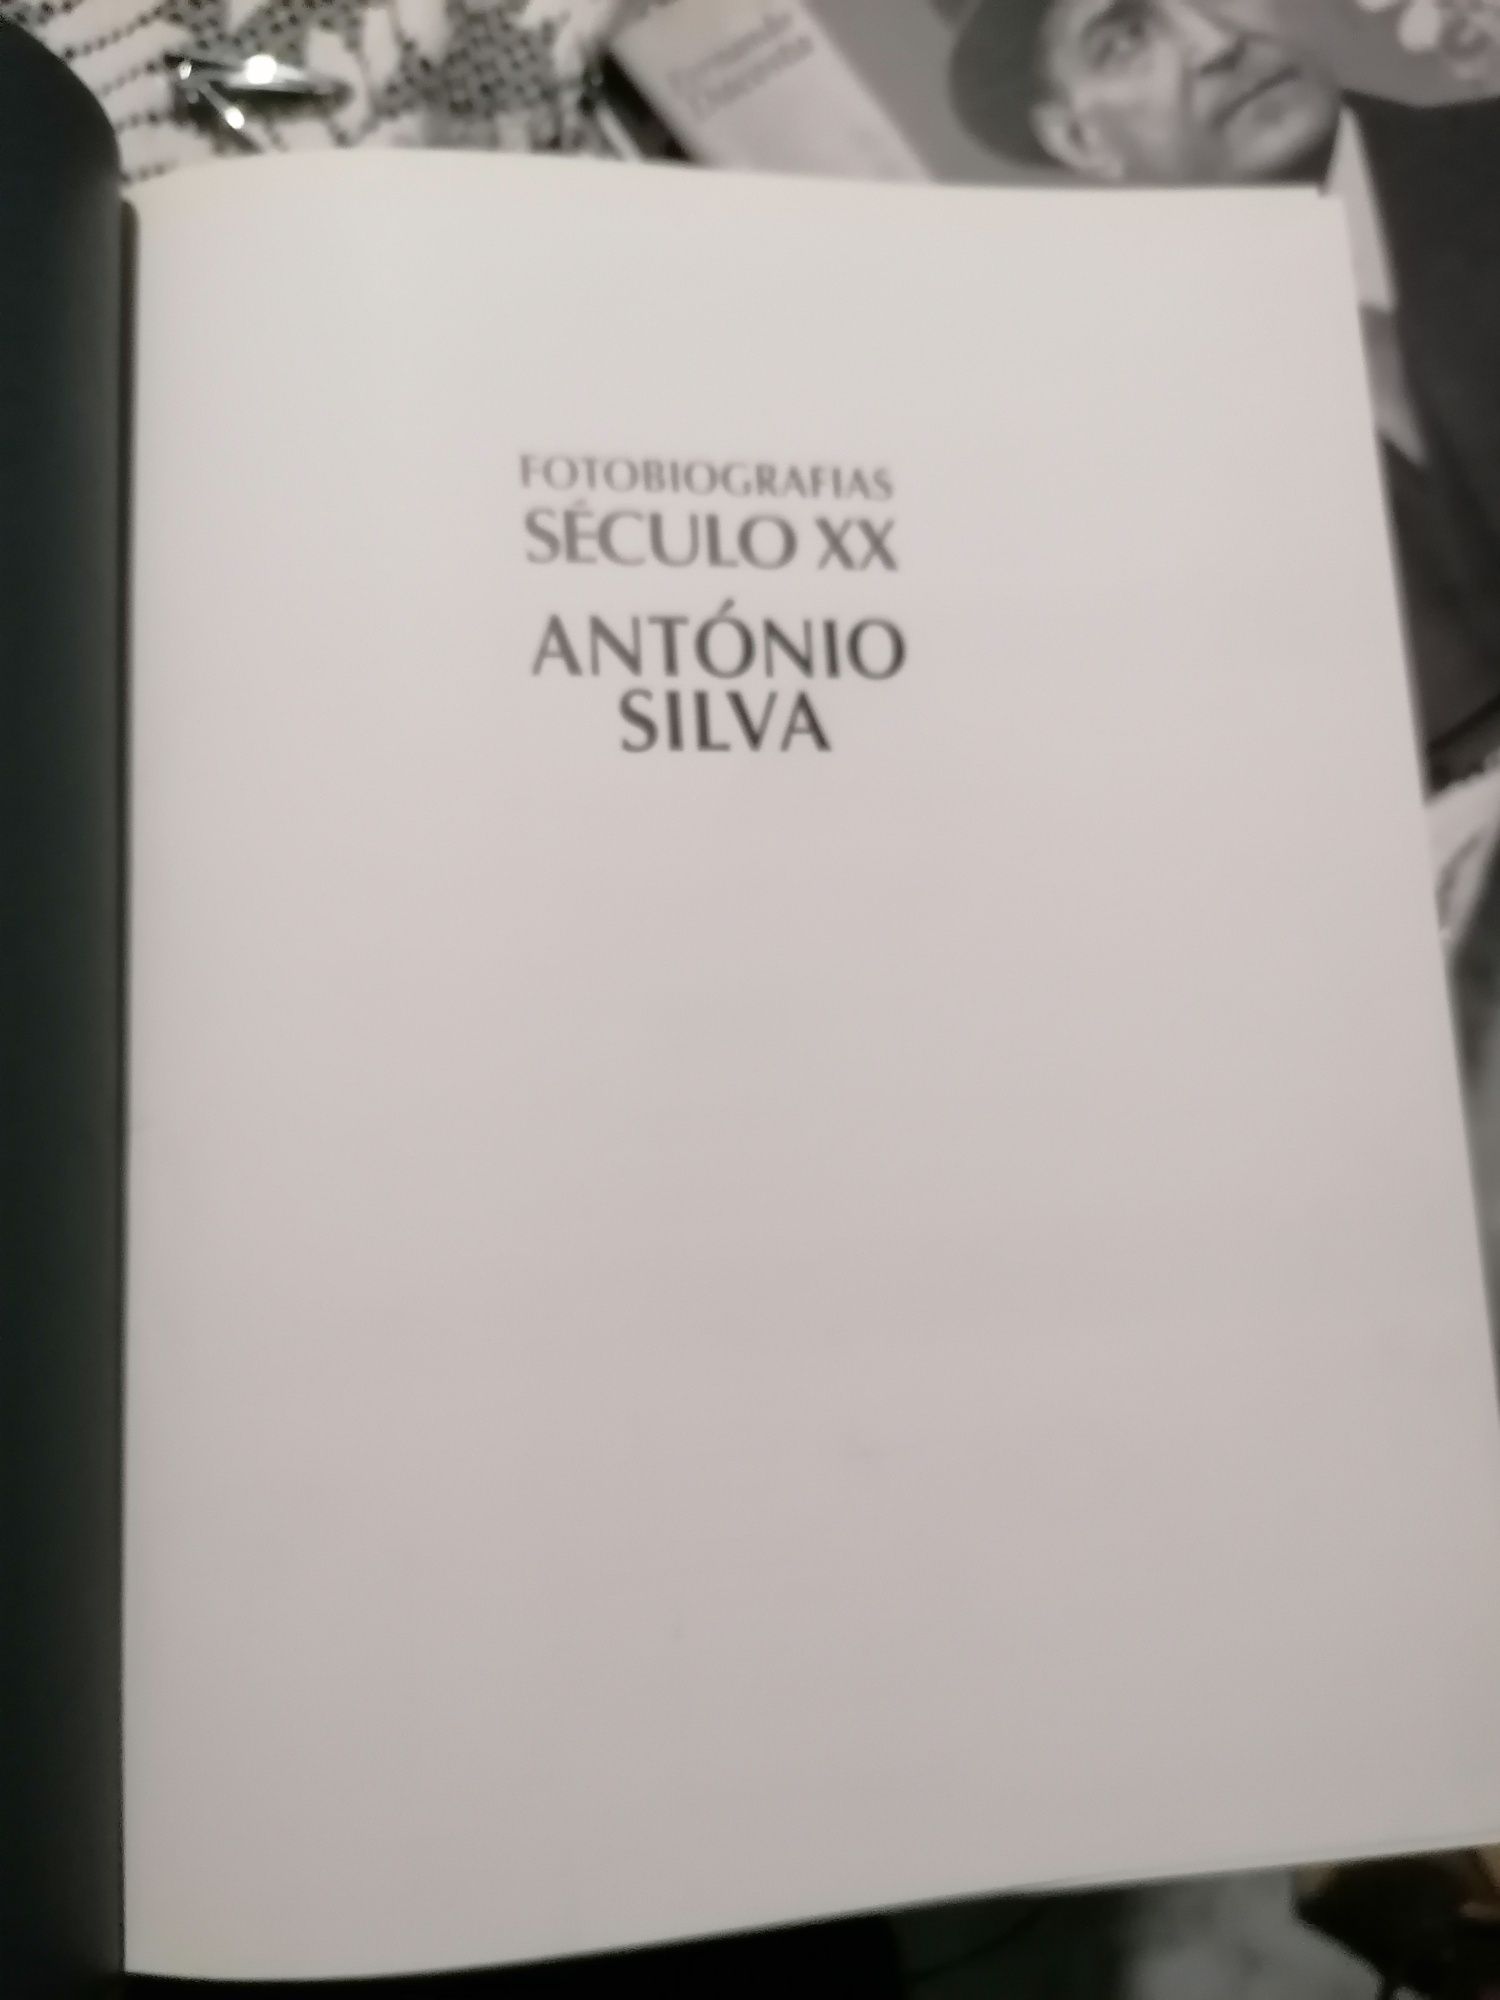 Livro de António Silva Fotobiografia